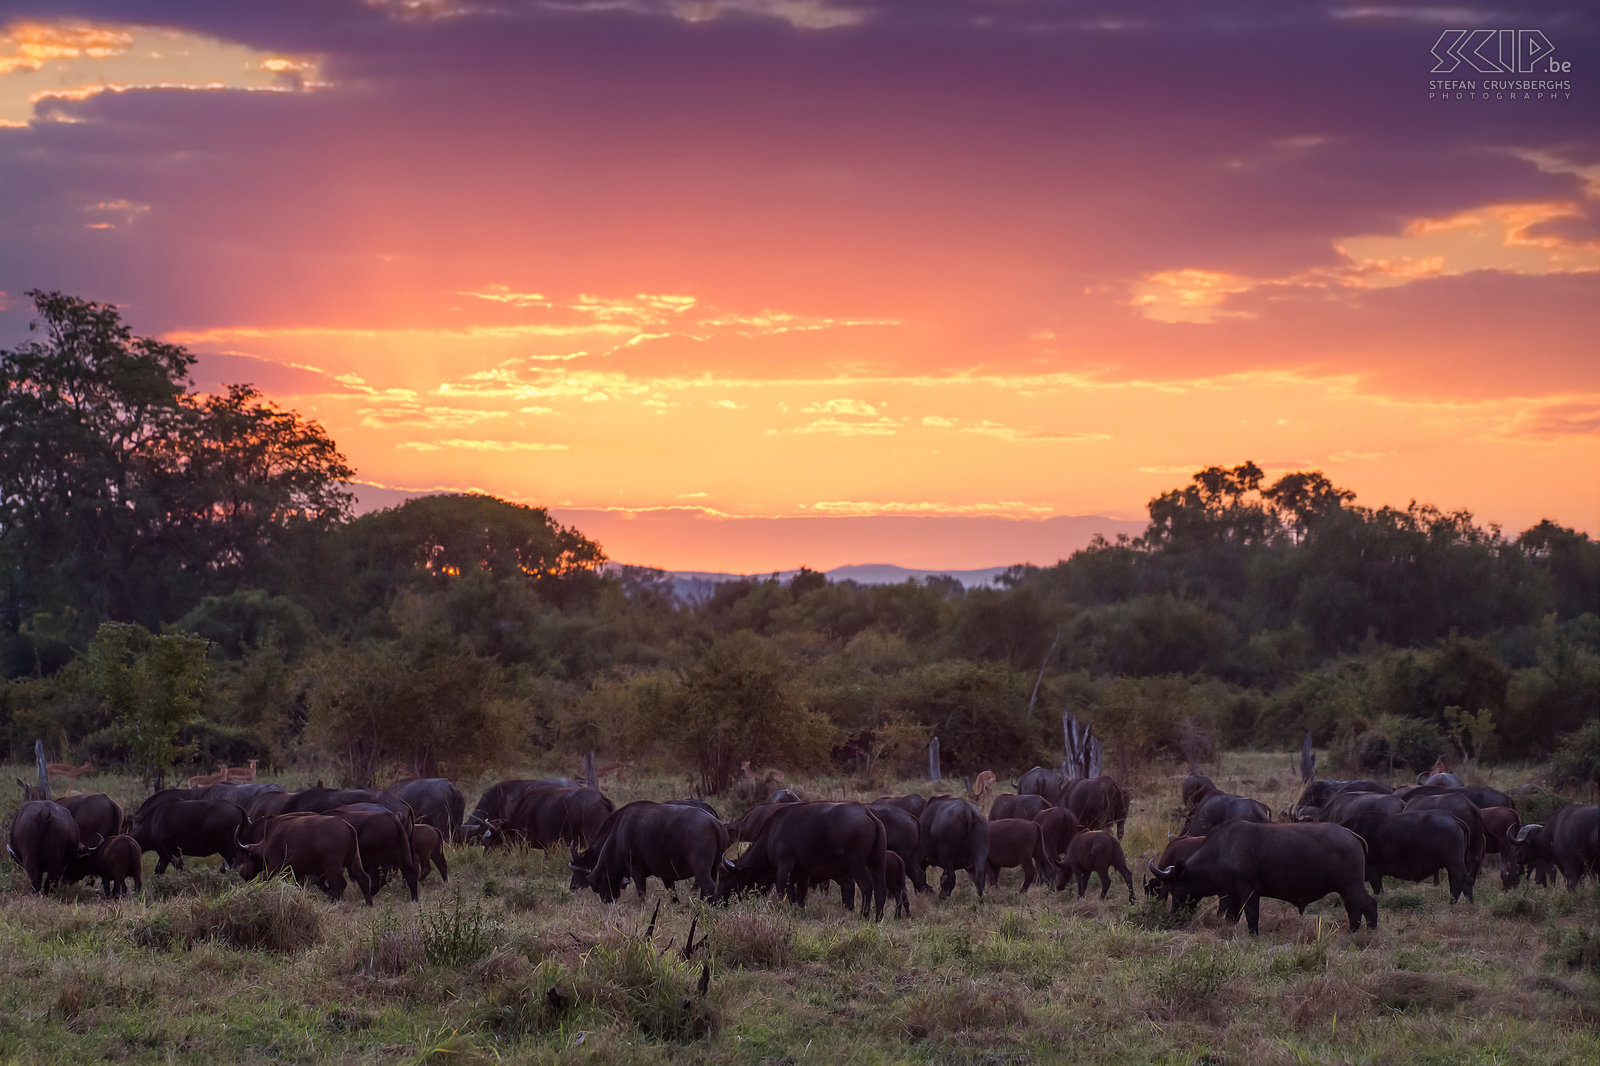 South Luangwa - Buffels bij zonsondergang Bij zonsondergang kwamen we een groep van 100 Afrikaanse buffels (Syncerus caffer) tegen. De buffel is een lid van de 'big five' en wordt beschouwd als een vrij gevaarlijk dier omdat ze agressief kunnen zijn en mensen aanvallen. Stefan Cruysberghs